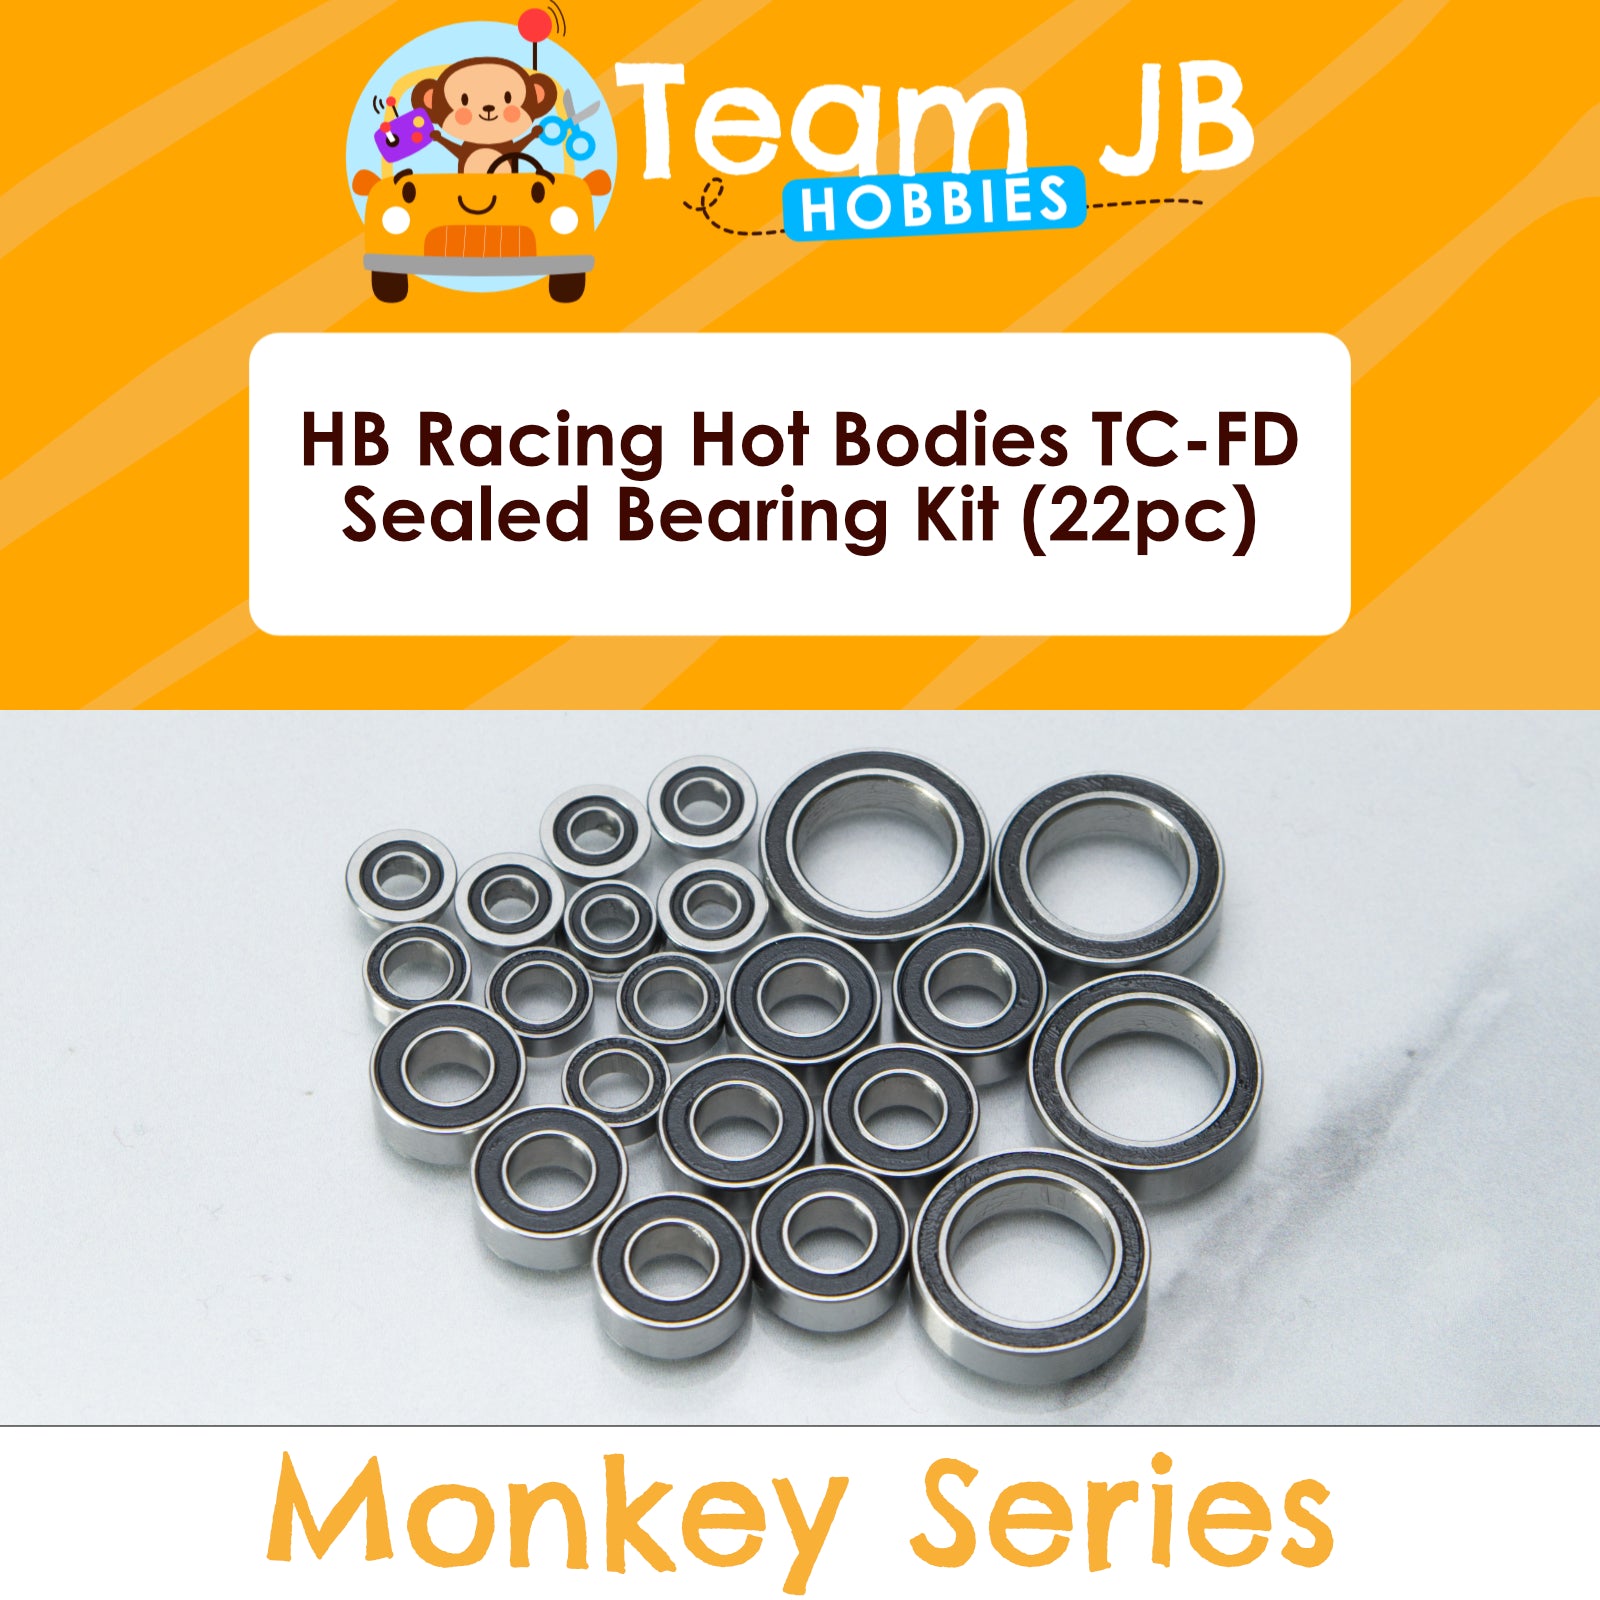 HB Racing Hot Bodies TC-FD - Sealed Bearing Kit